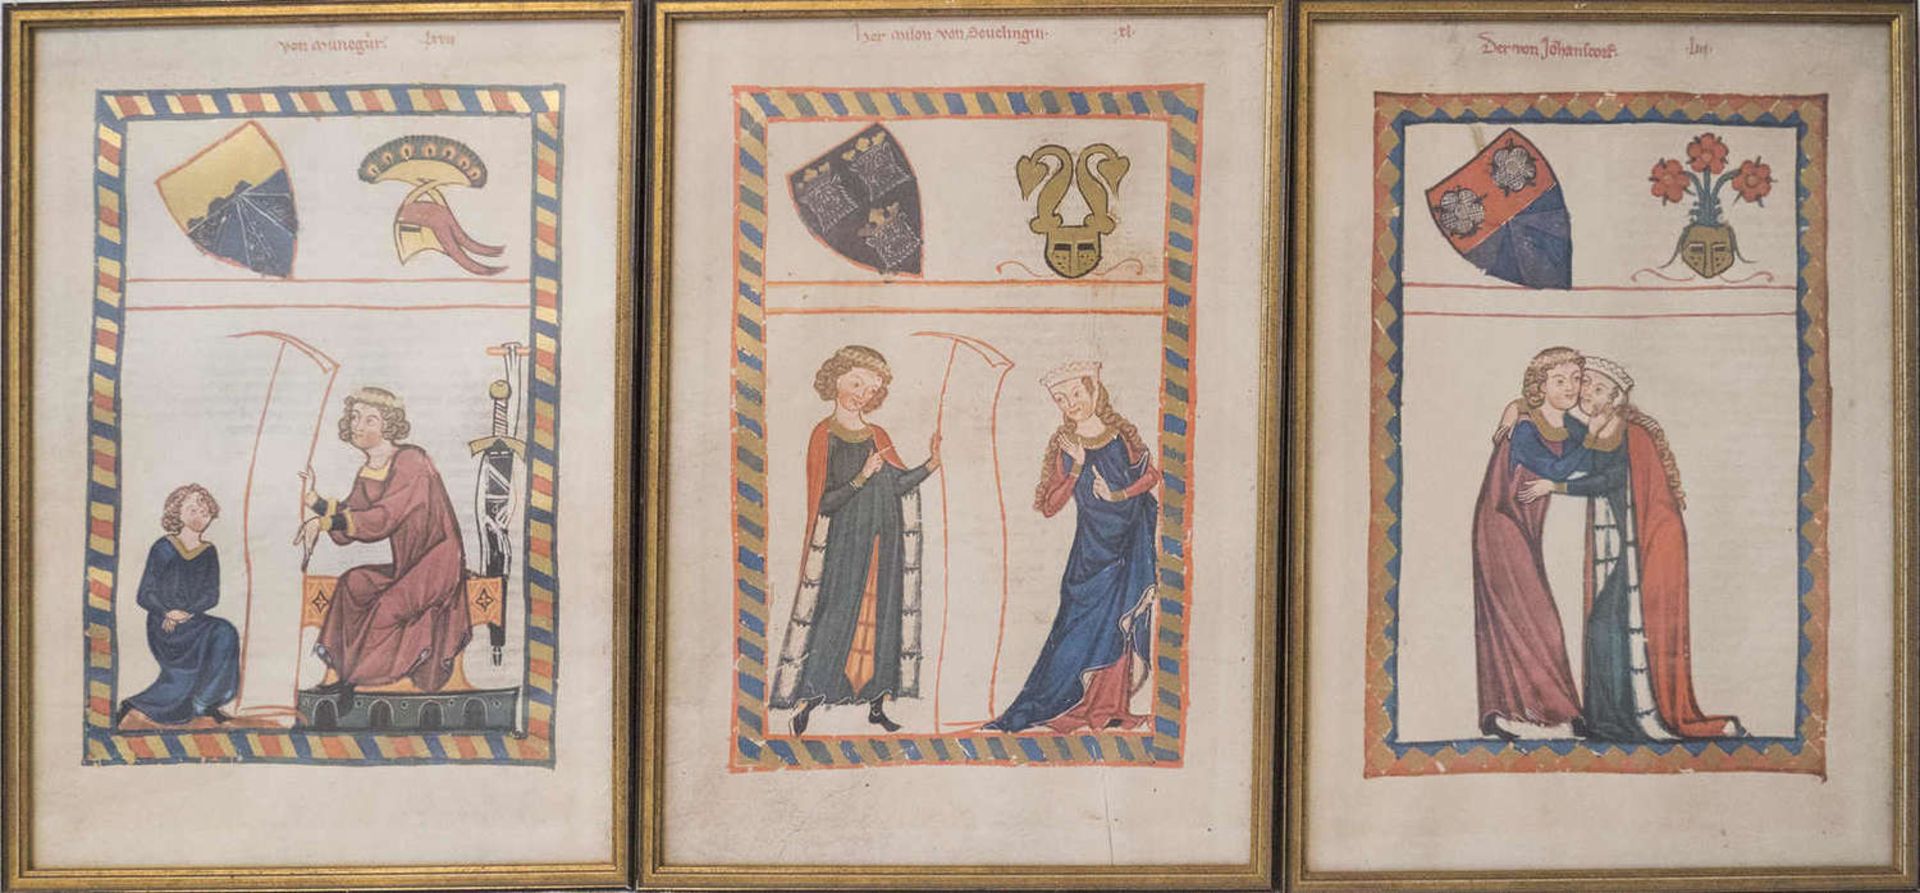 Rahmenkonvolut mit Bildern aus dem "Codex manesse". - Dr von Johansdorf, Gottfried von Neifen etc.